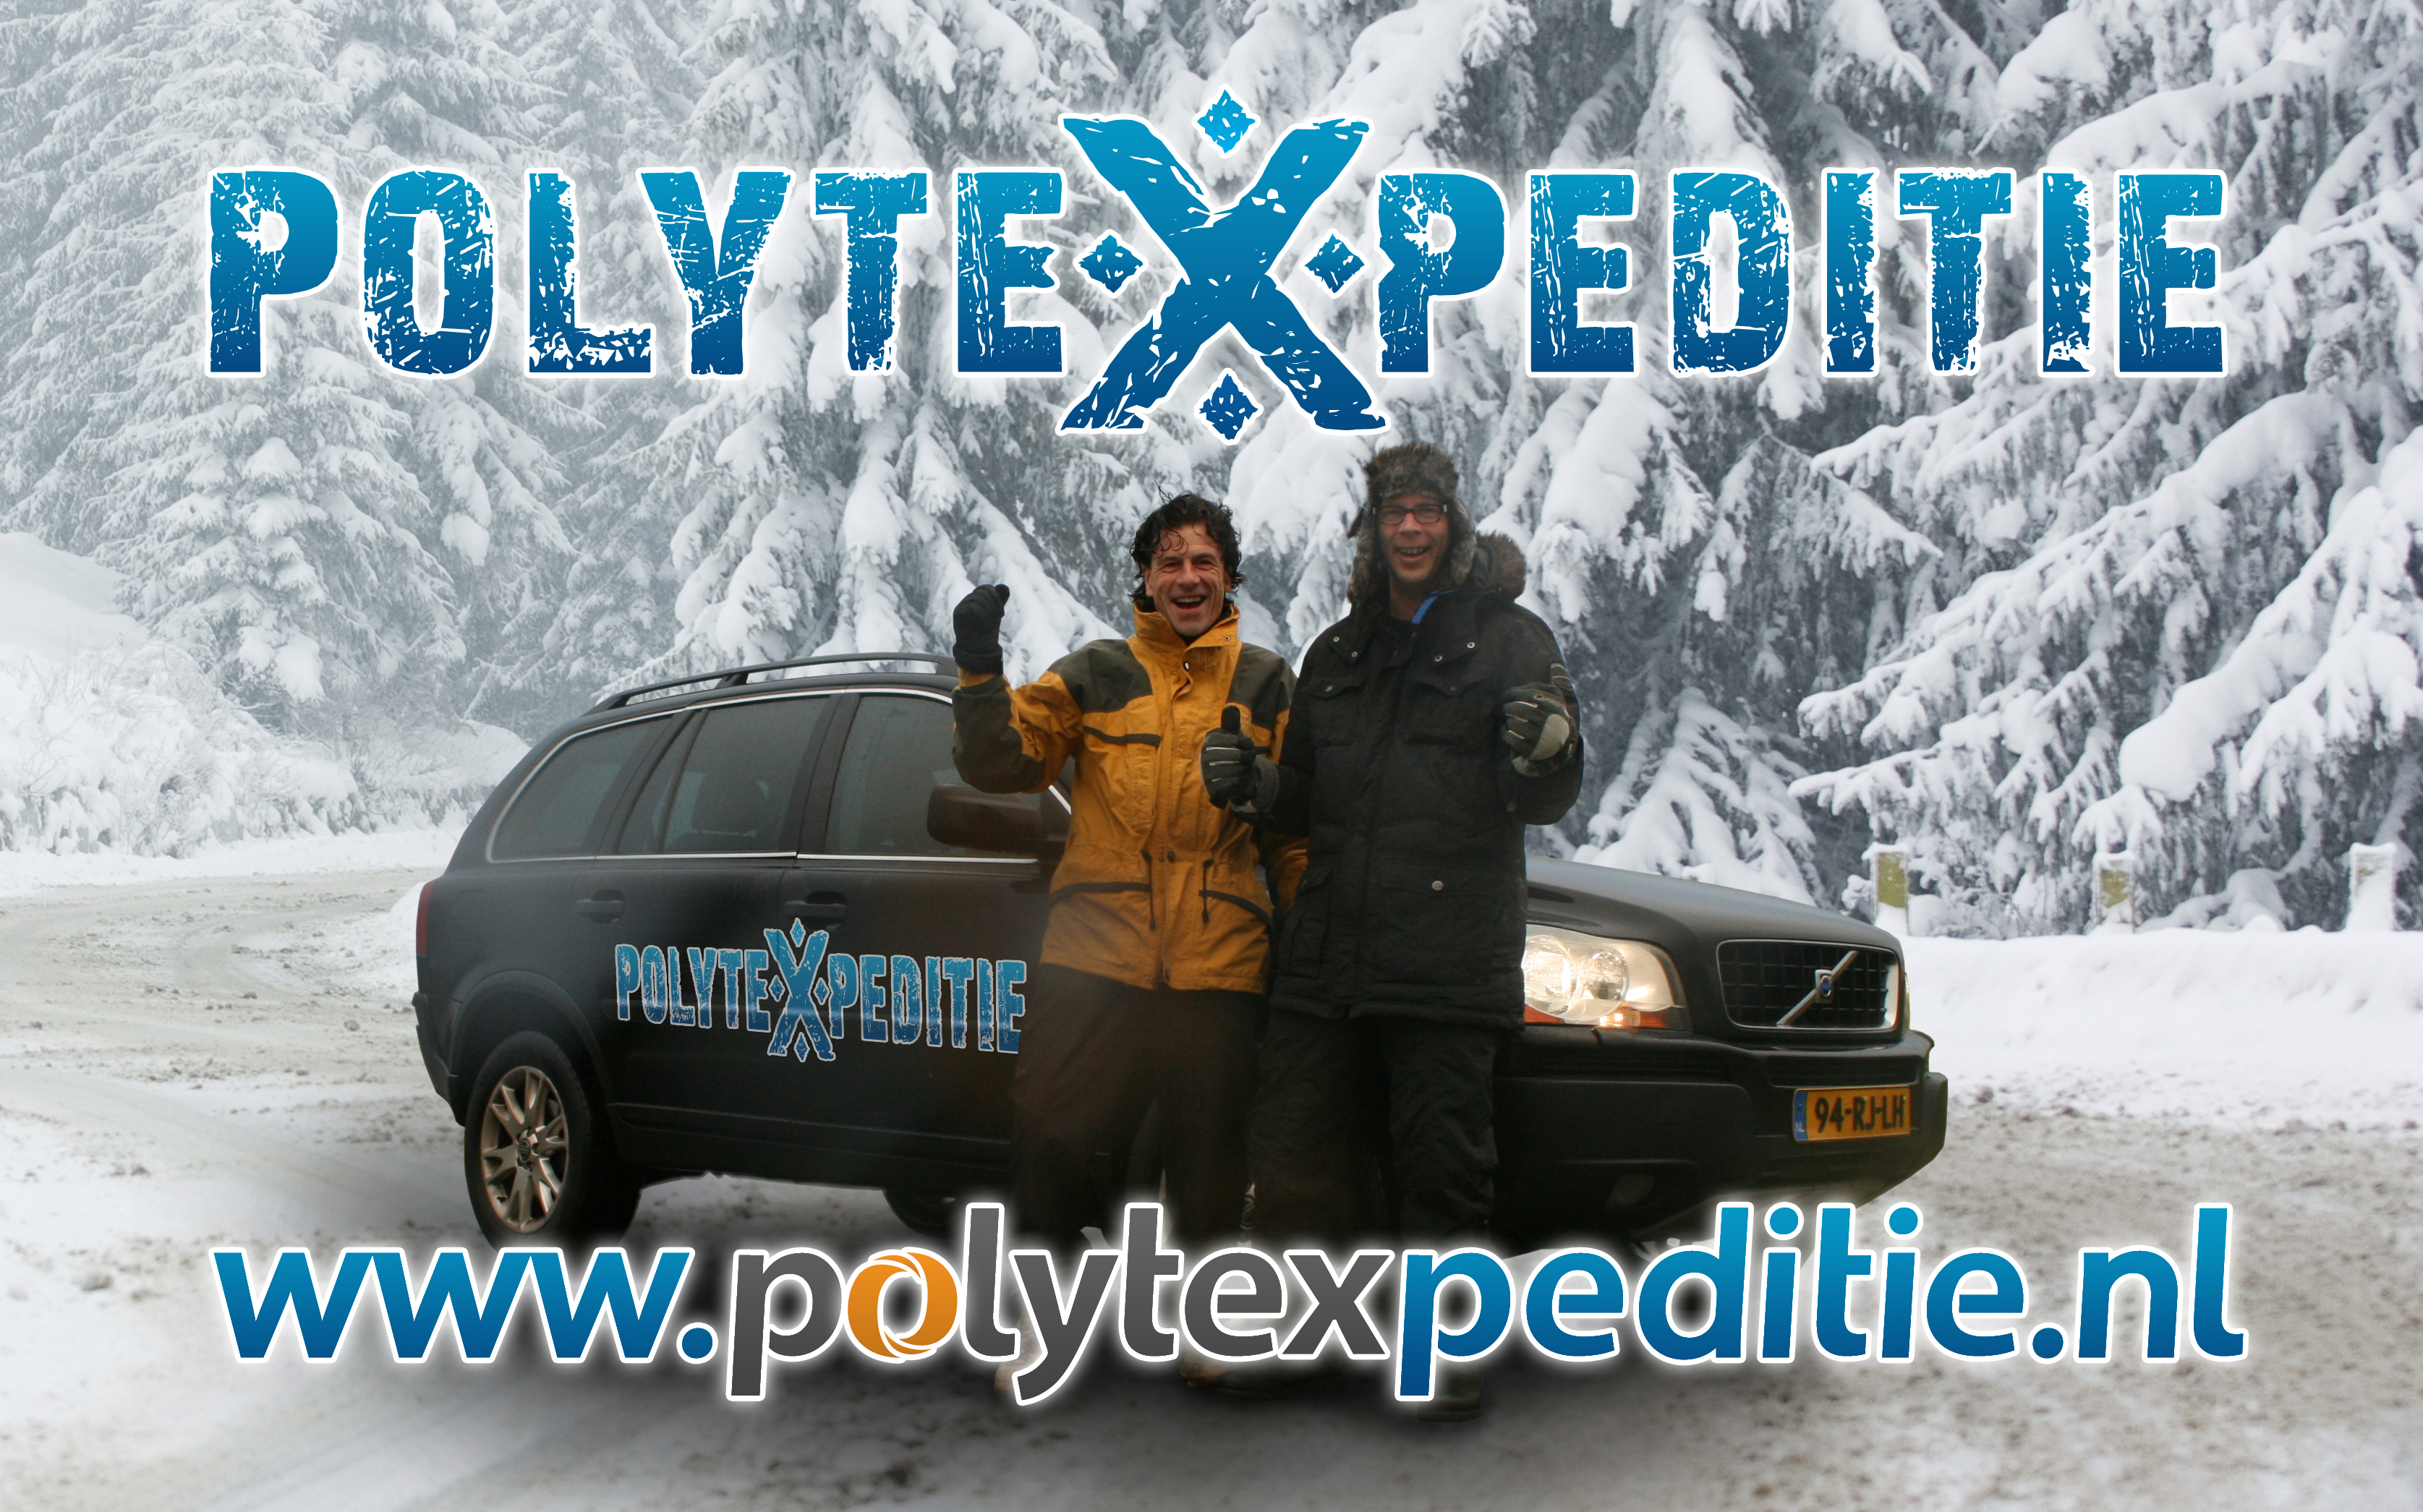 Polytexpeditie 001